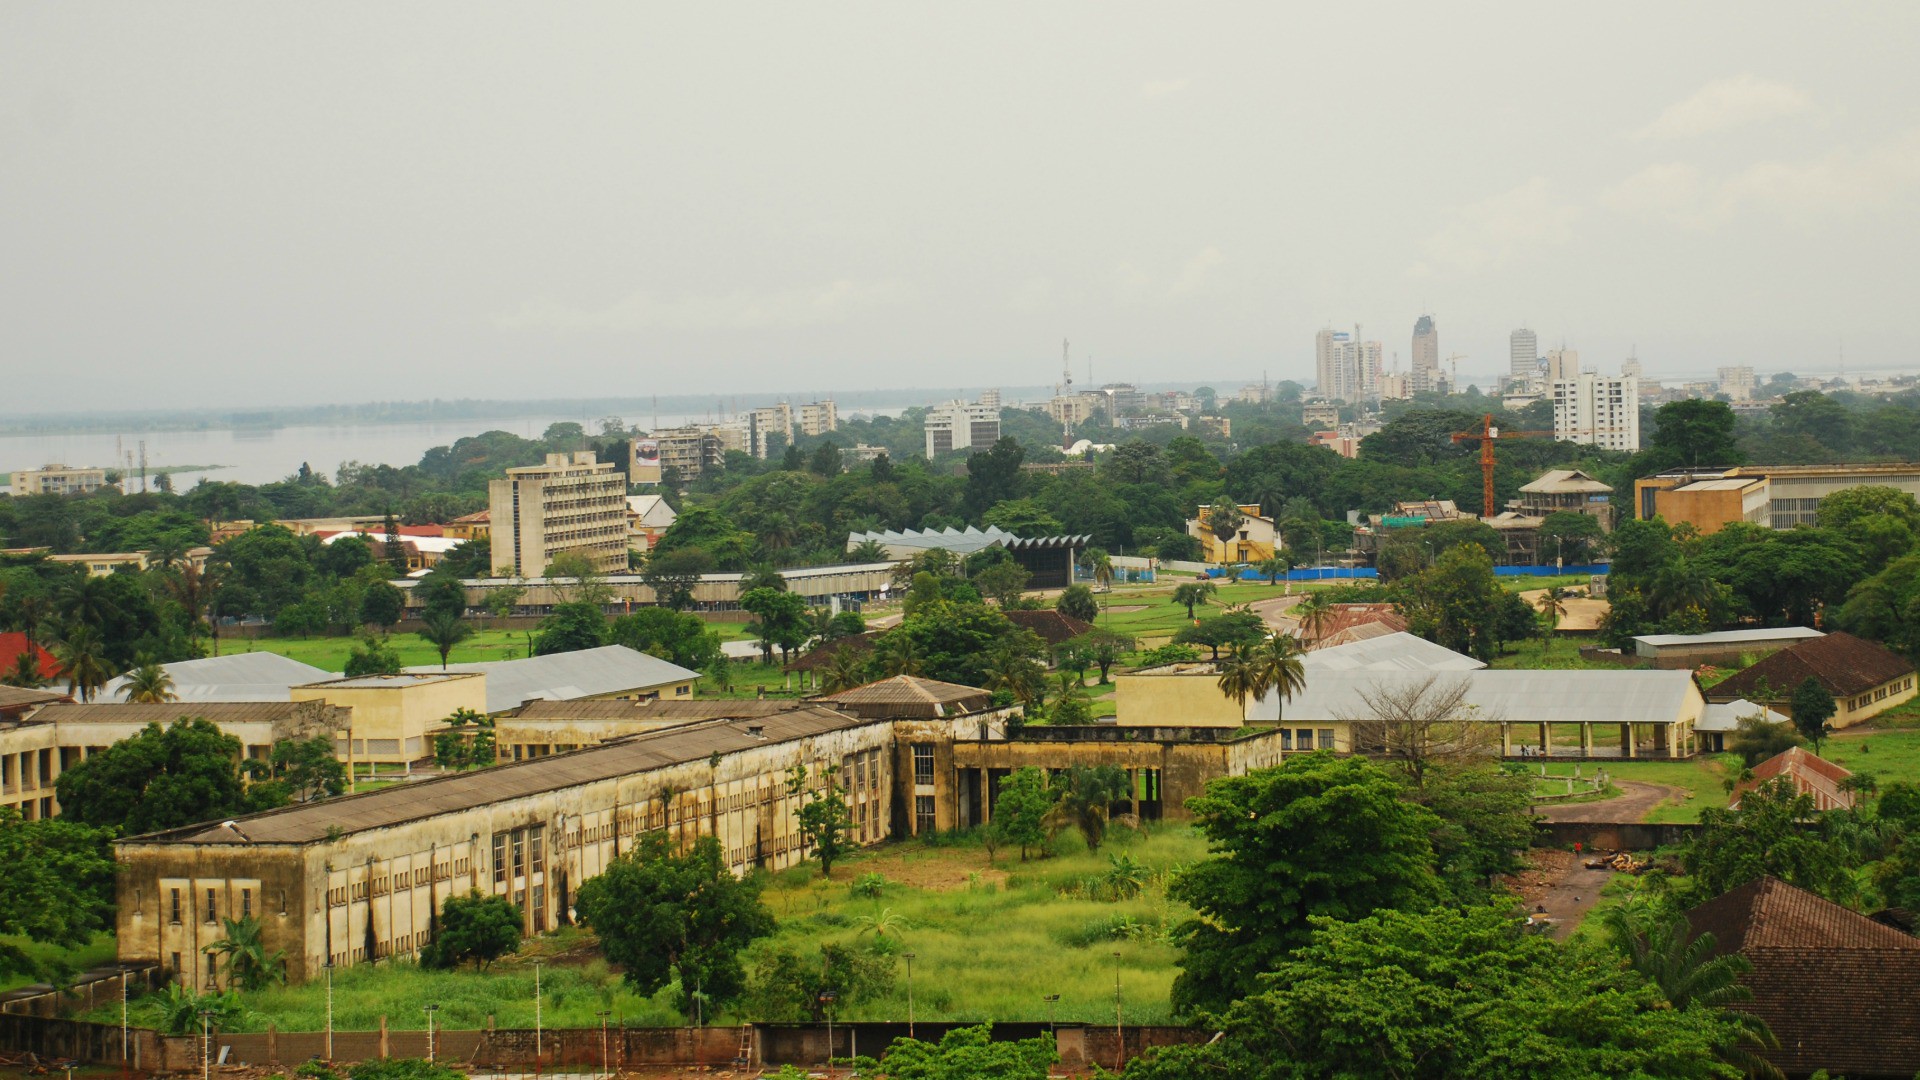 La capitale de la RDC, Kinshasa | © Irene 2005/Flickr/CC BY 2.0